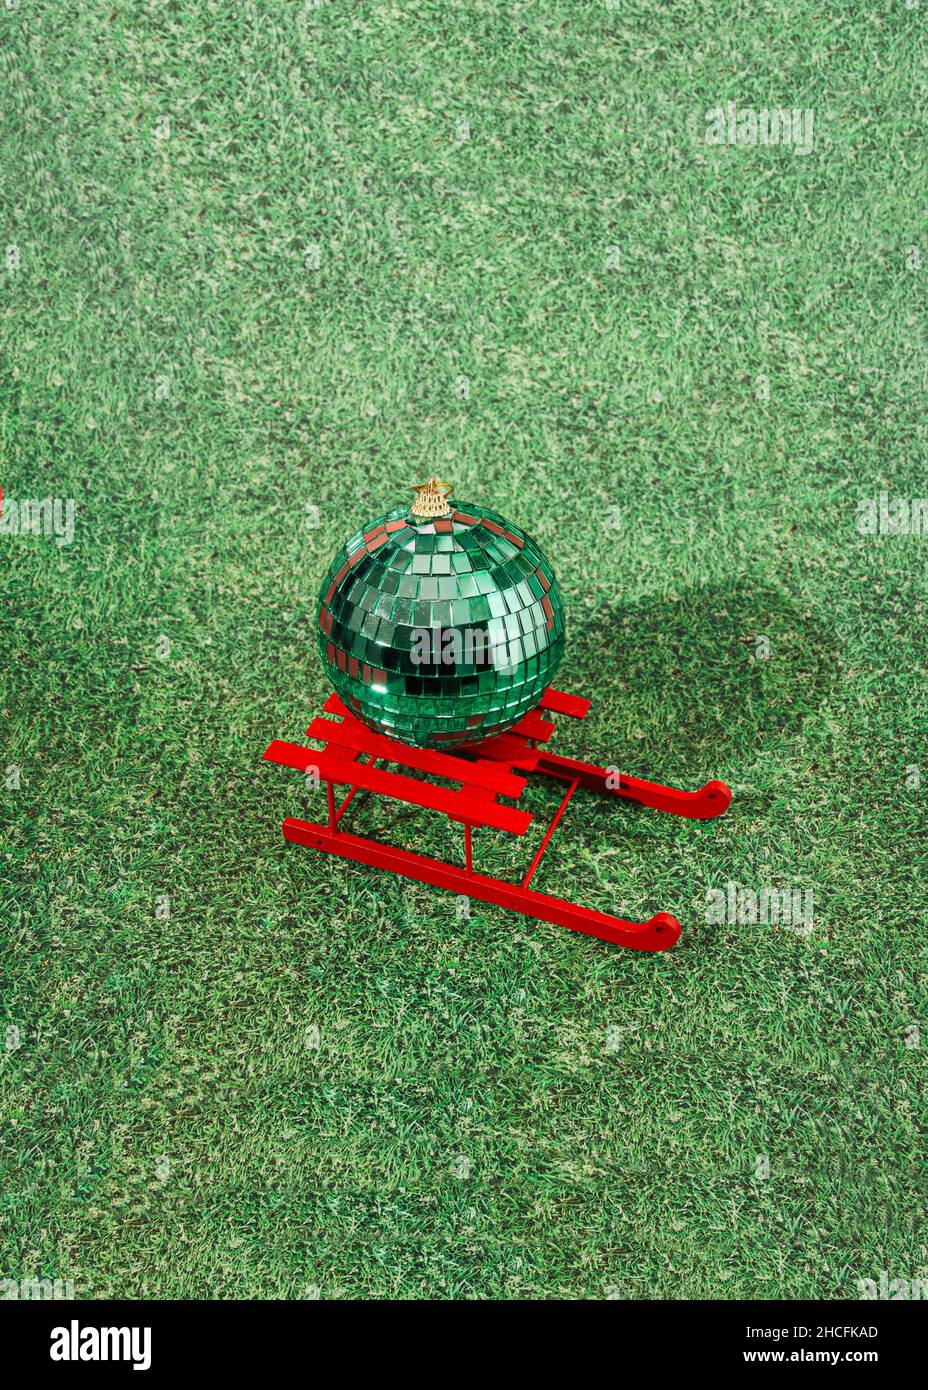 Eine riesige grüne Disco Ball Ornament auf roten Schlitten auf Kunstrasen Hintergrund. Kreatives Konzept für festliche Feiertage an einem warmen Ort. Design für Adve Stockfoto